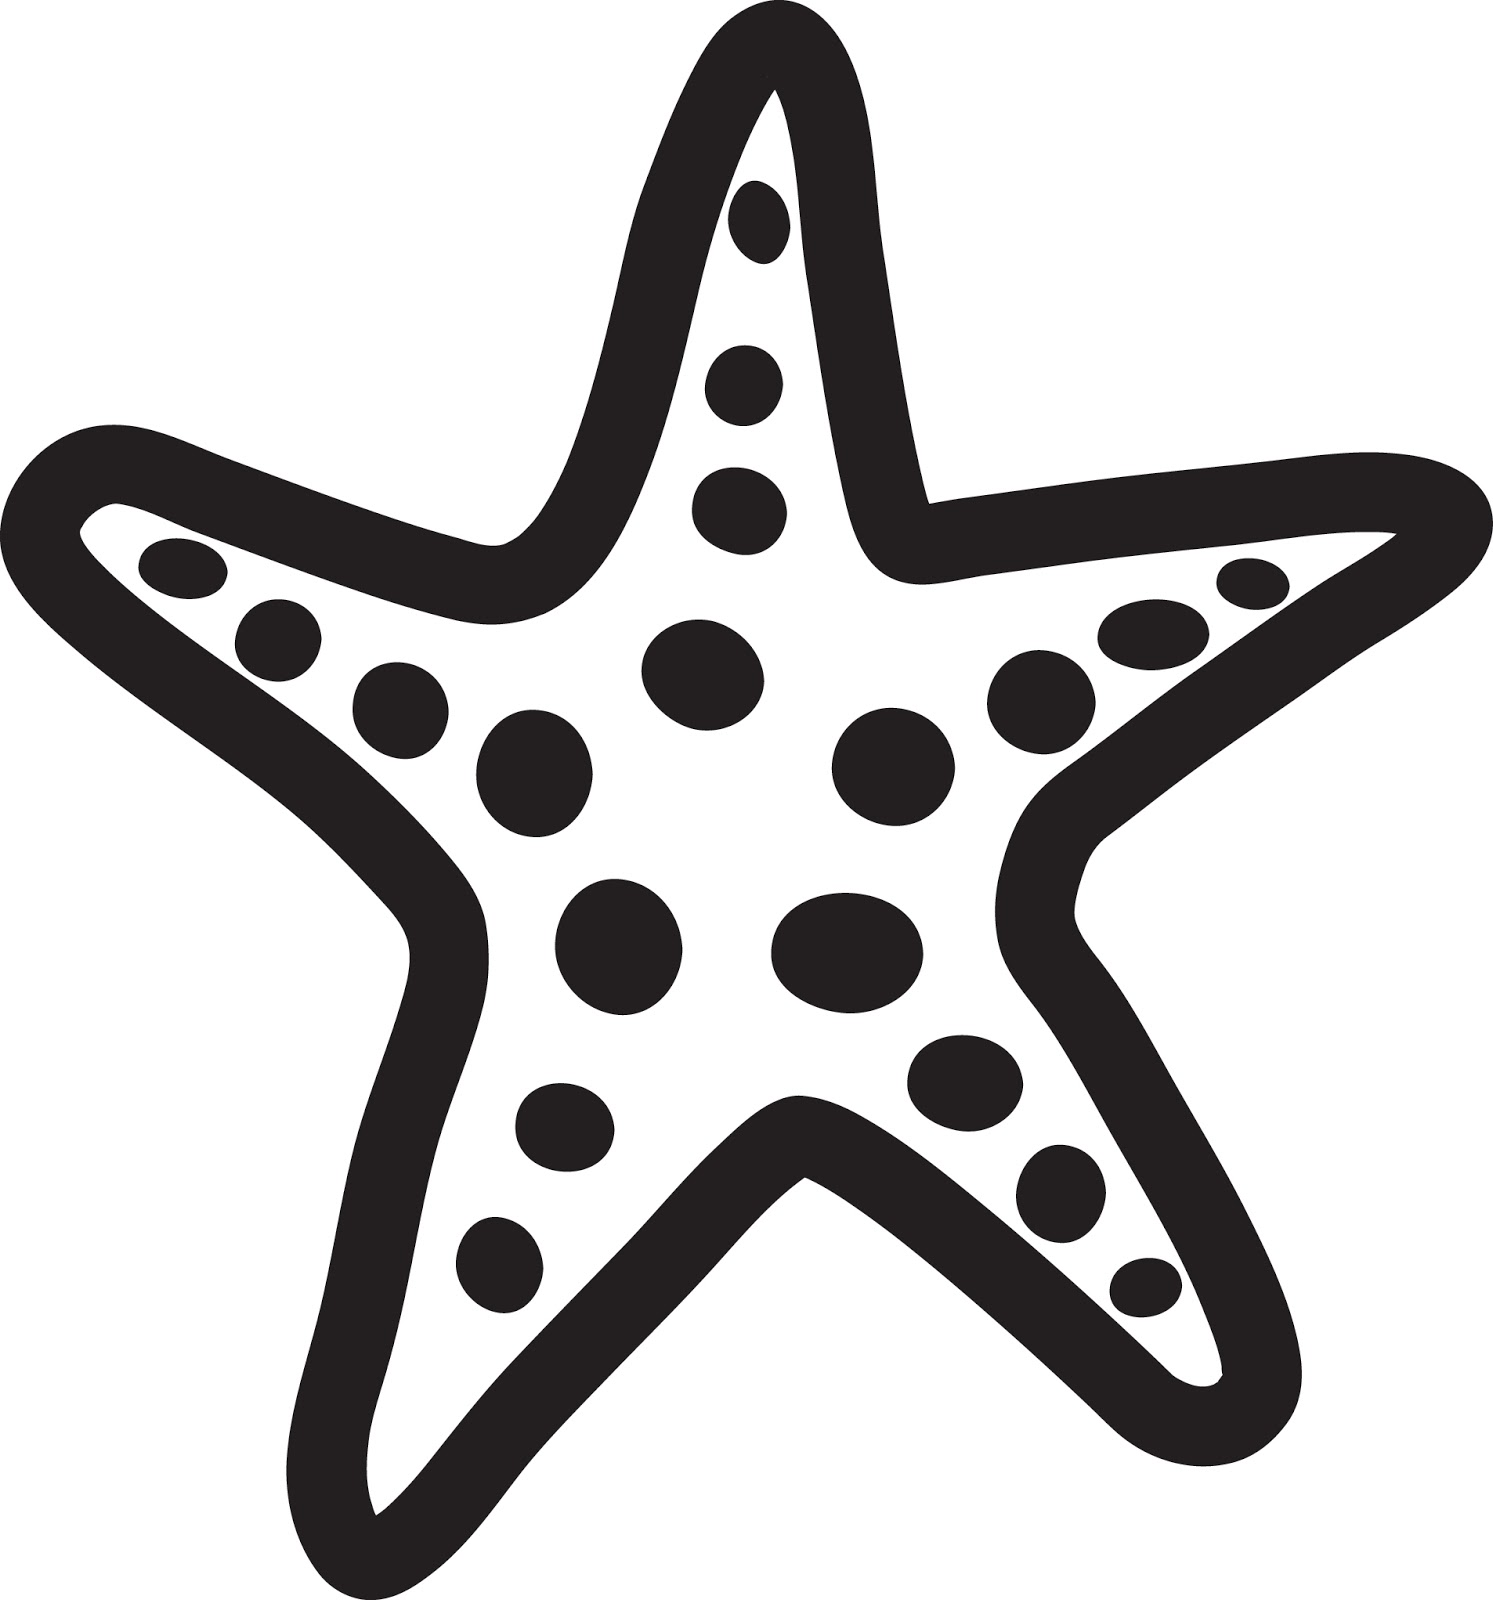 Starfish Clipart - Clipart Ki - Starfish Clip Art